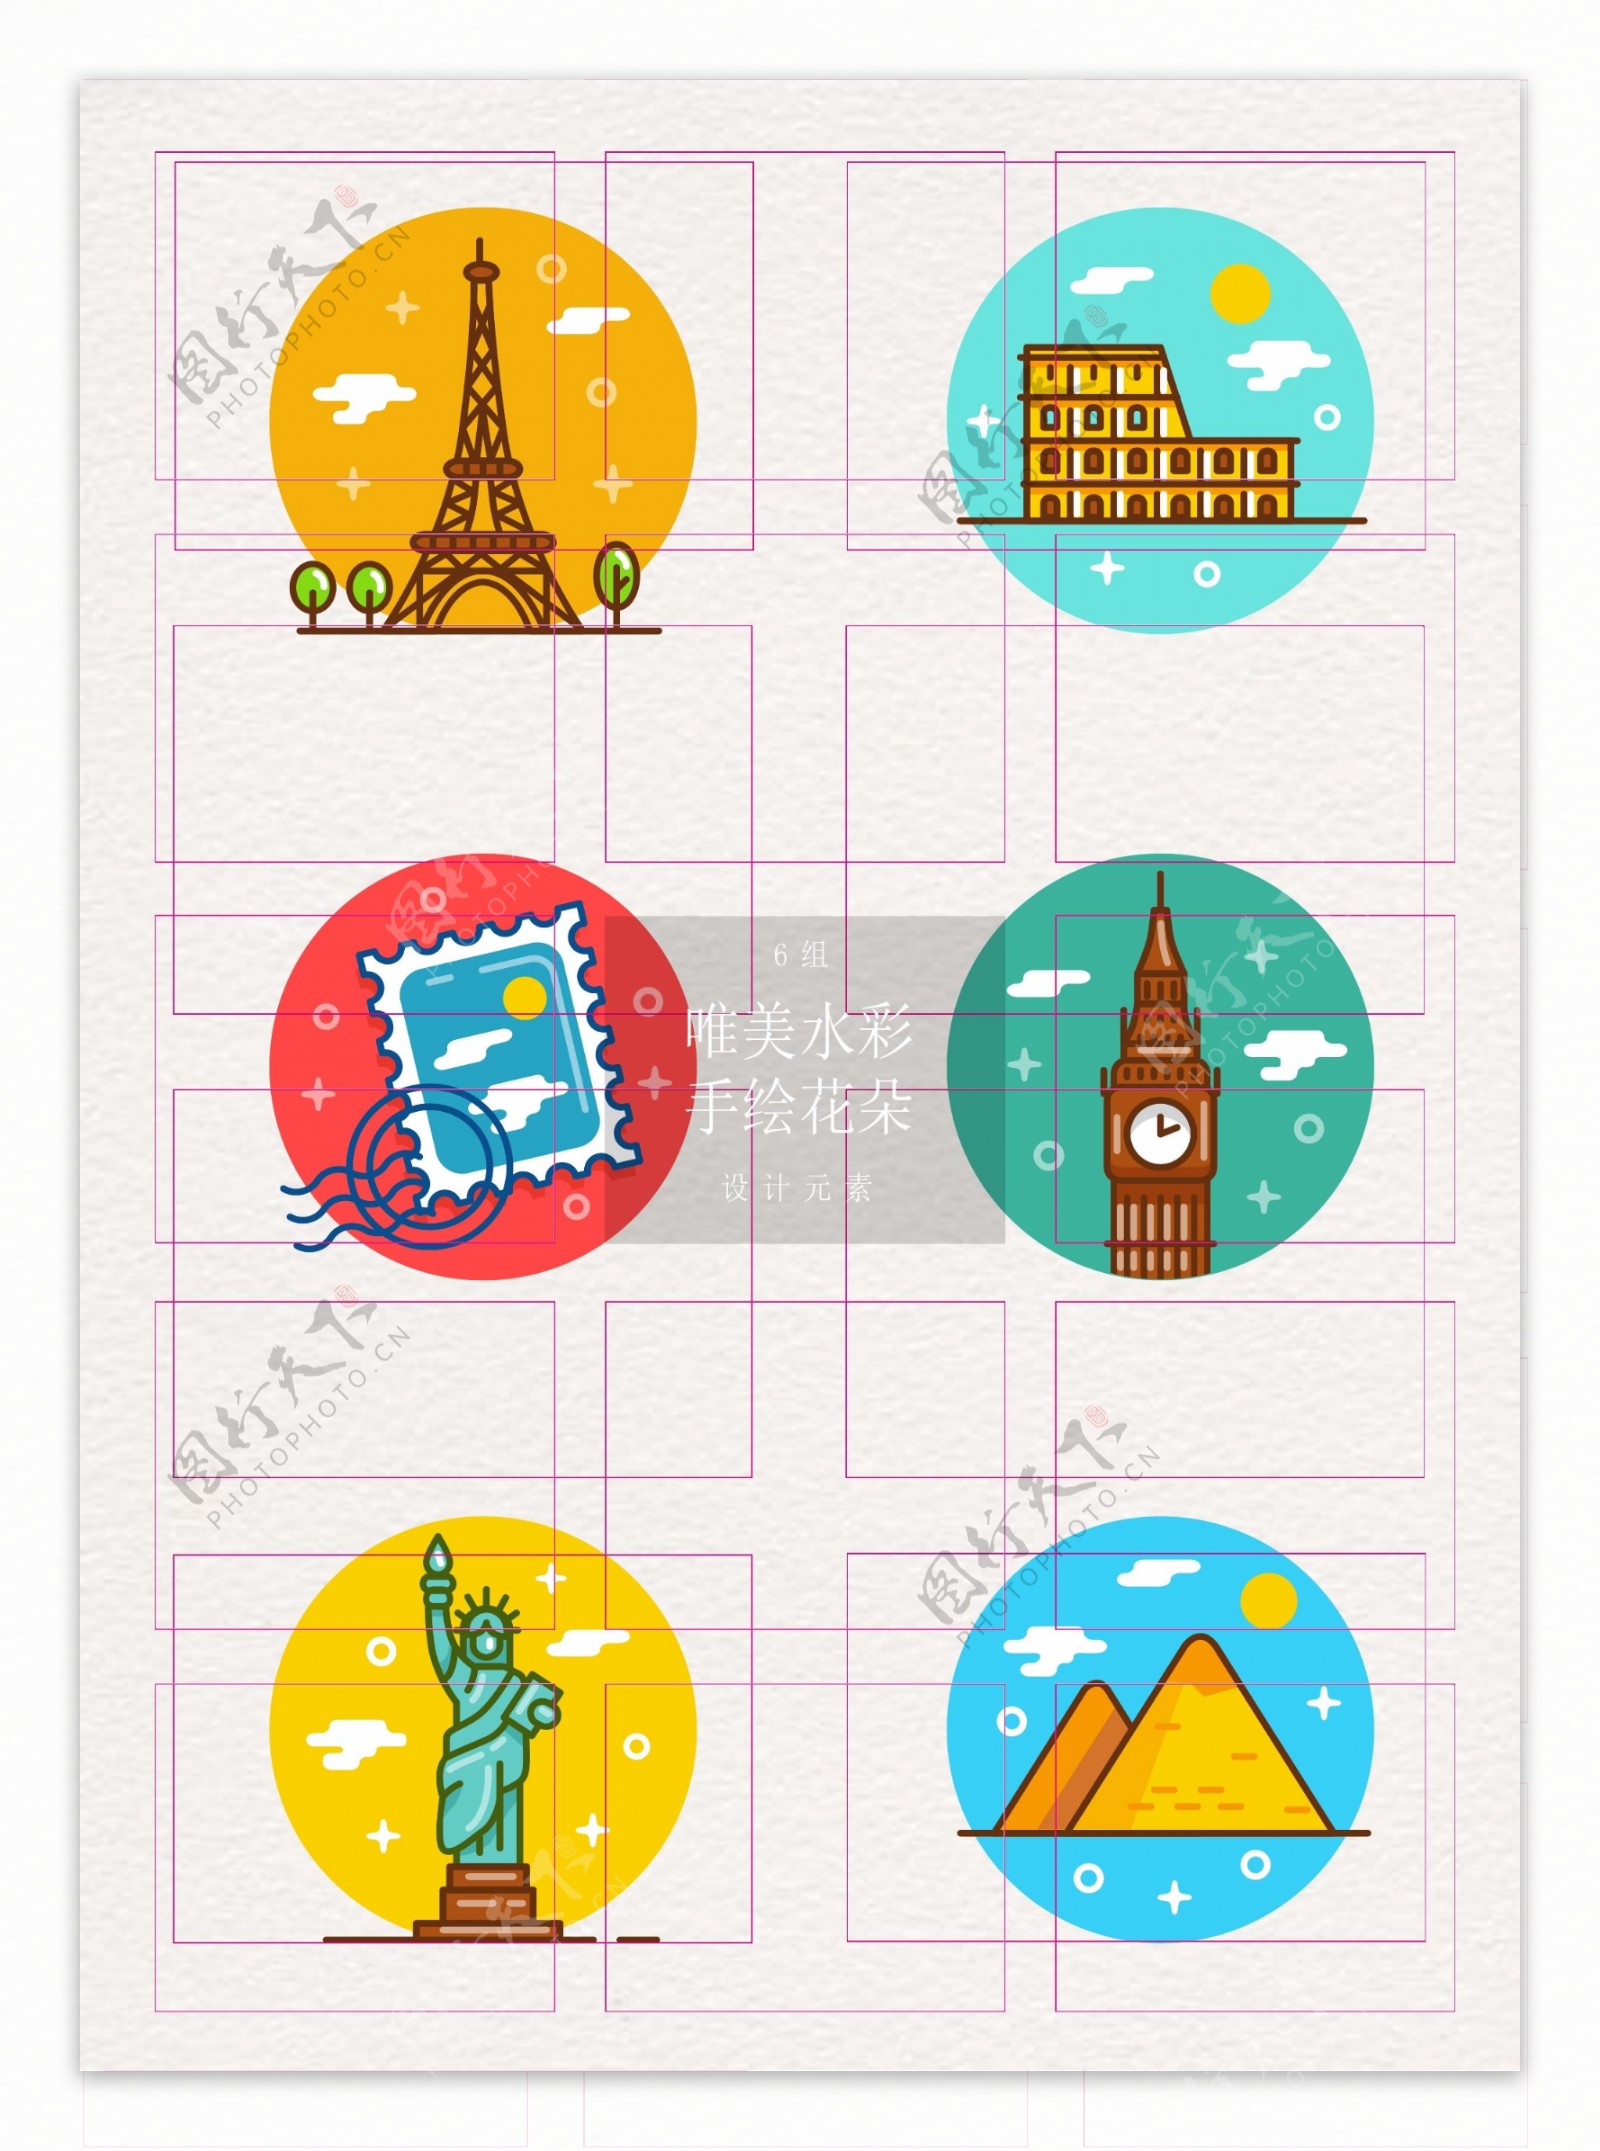 mbe彩色国家旅行图标素材设计